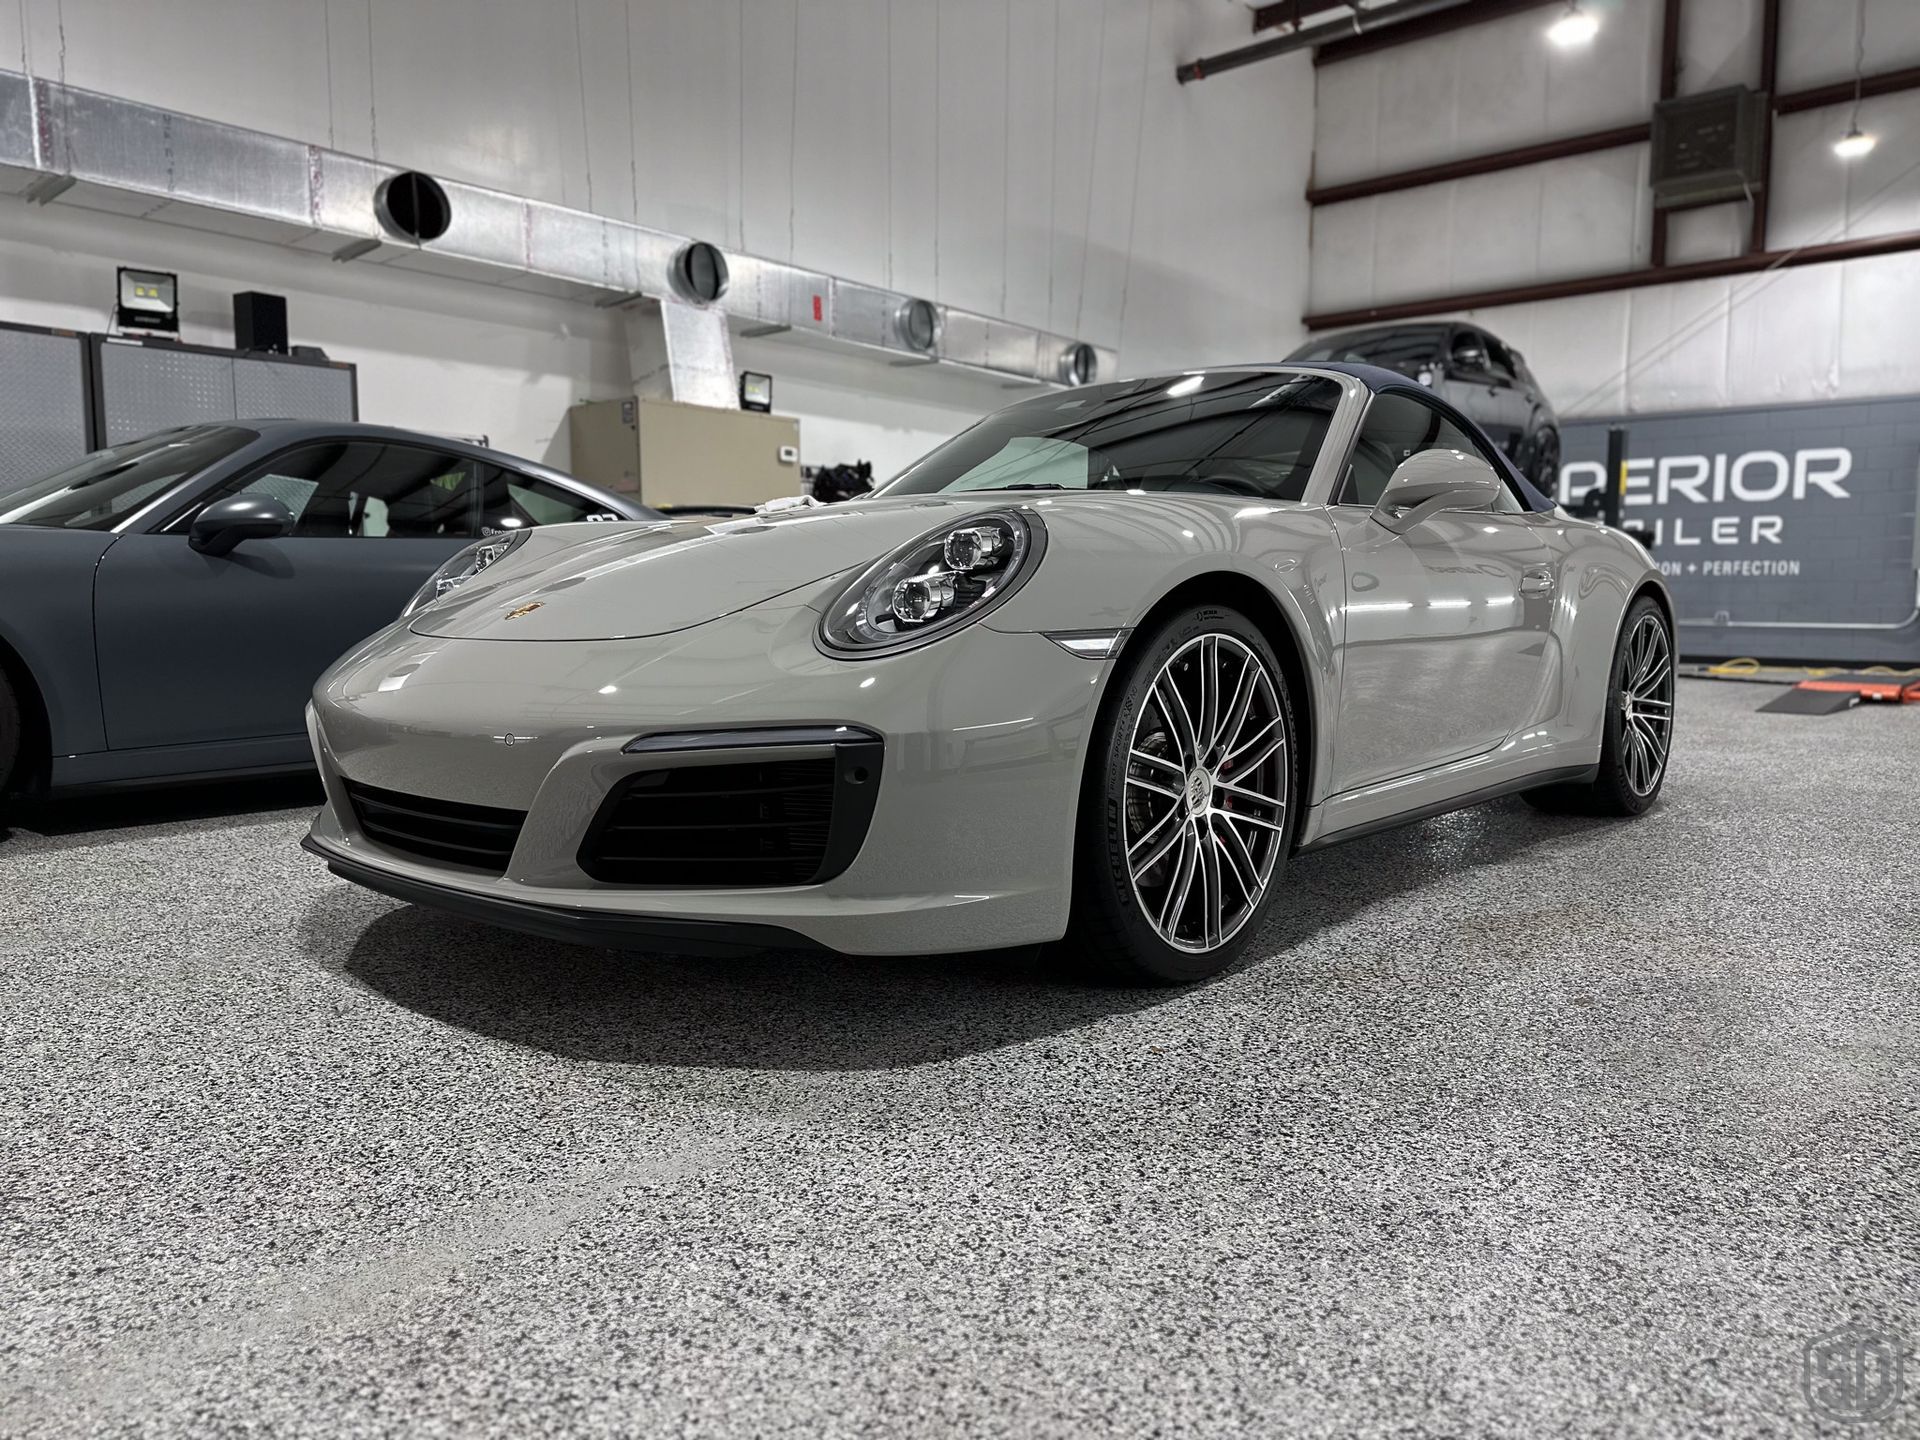 Porsche 911 Carrera Cab 4S Complete Detail and Modesta Ceramic Coating Maintenance Orlando, Florida USA